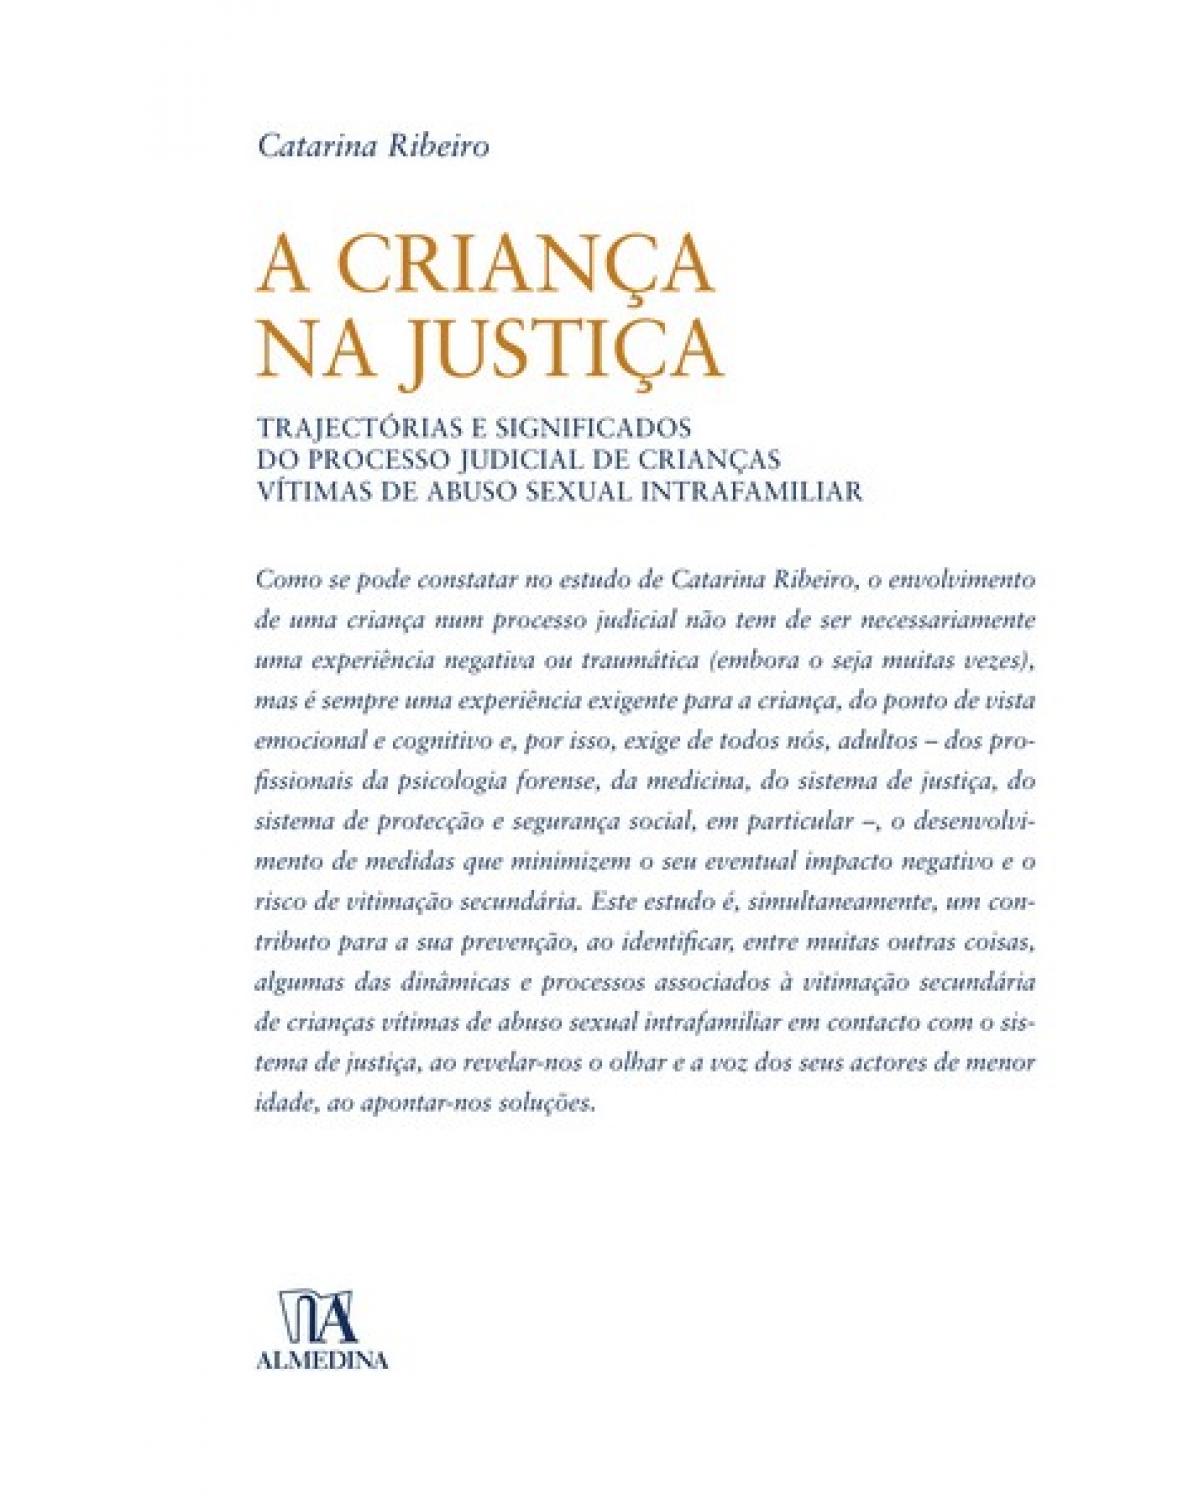 A criança na justiça: trajectórias e significados do processo judicial de crianças vítimas de abuso sexual intrafamiliar - 1ª Edição | 2009